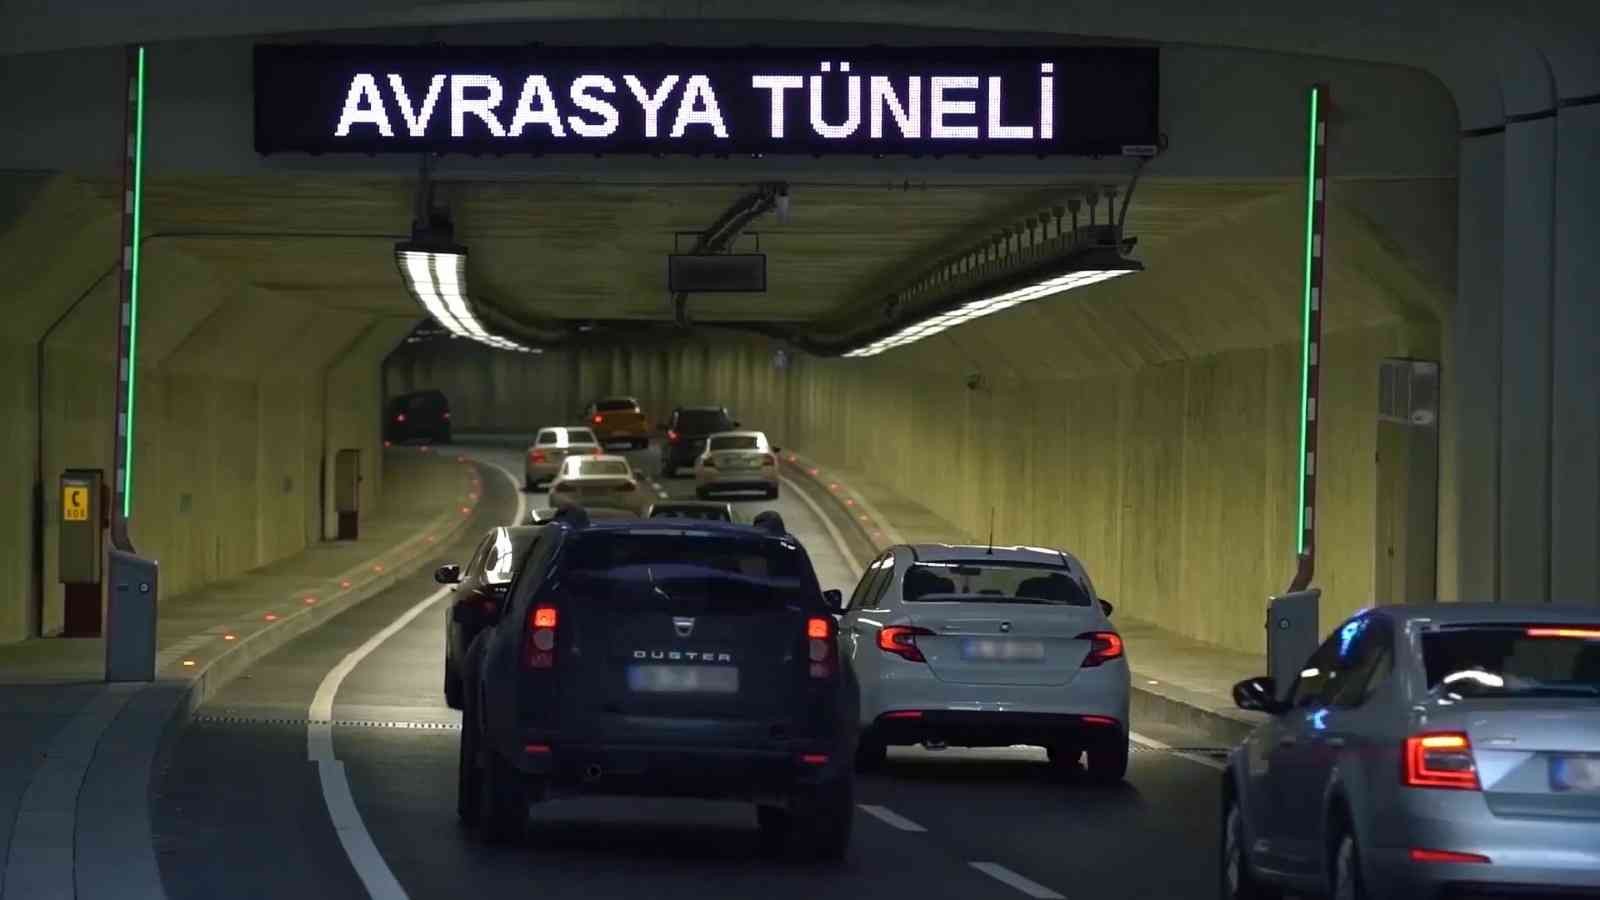 Avrasya Tüneli’nden motosikletler için tek yön geçiş ücretleri gündüz 20,70 TL gece ise 10,35 TL olarak belirlendi